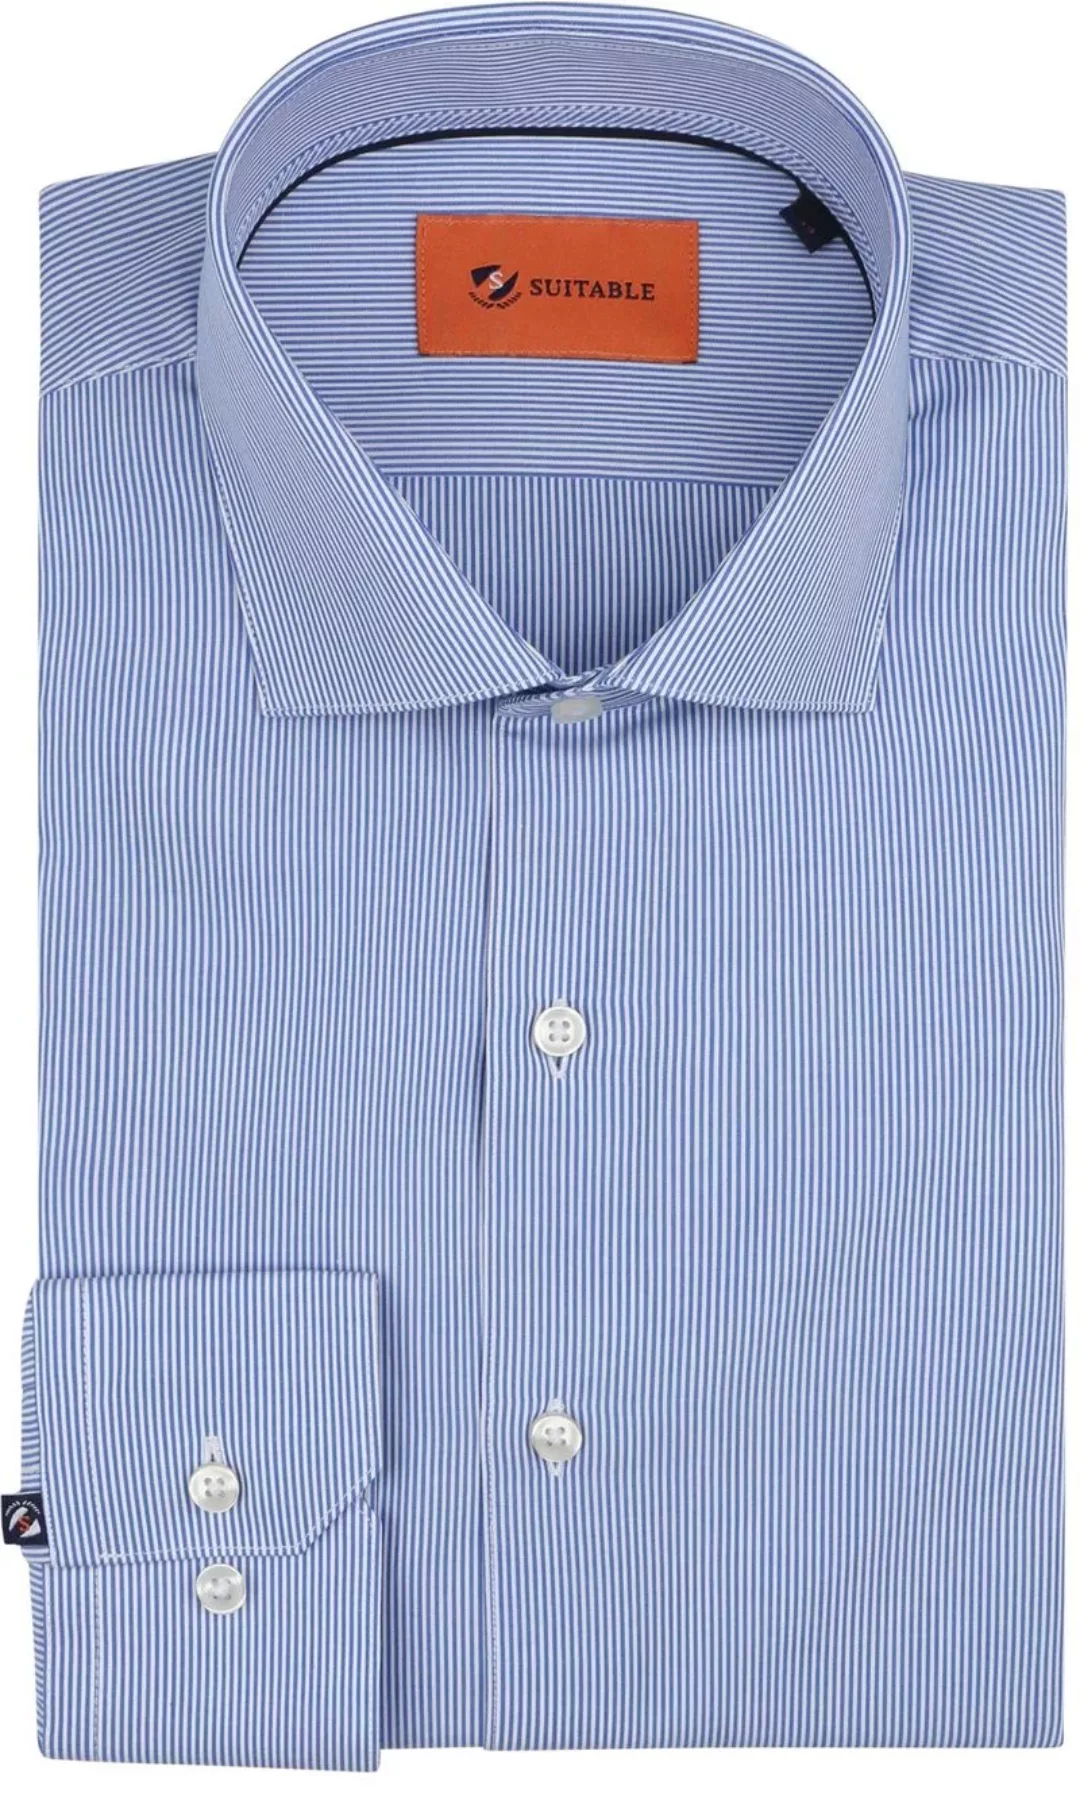 Suitable Hemd Streifen Blau - Größe 39 günstig online kaufen